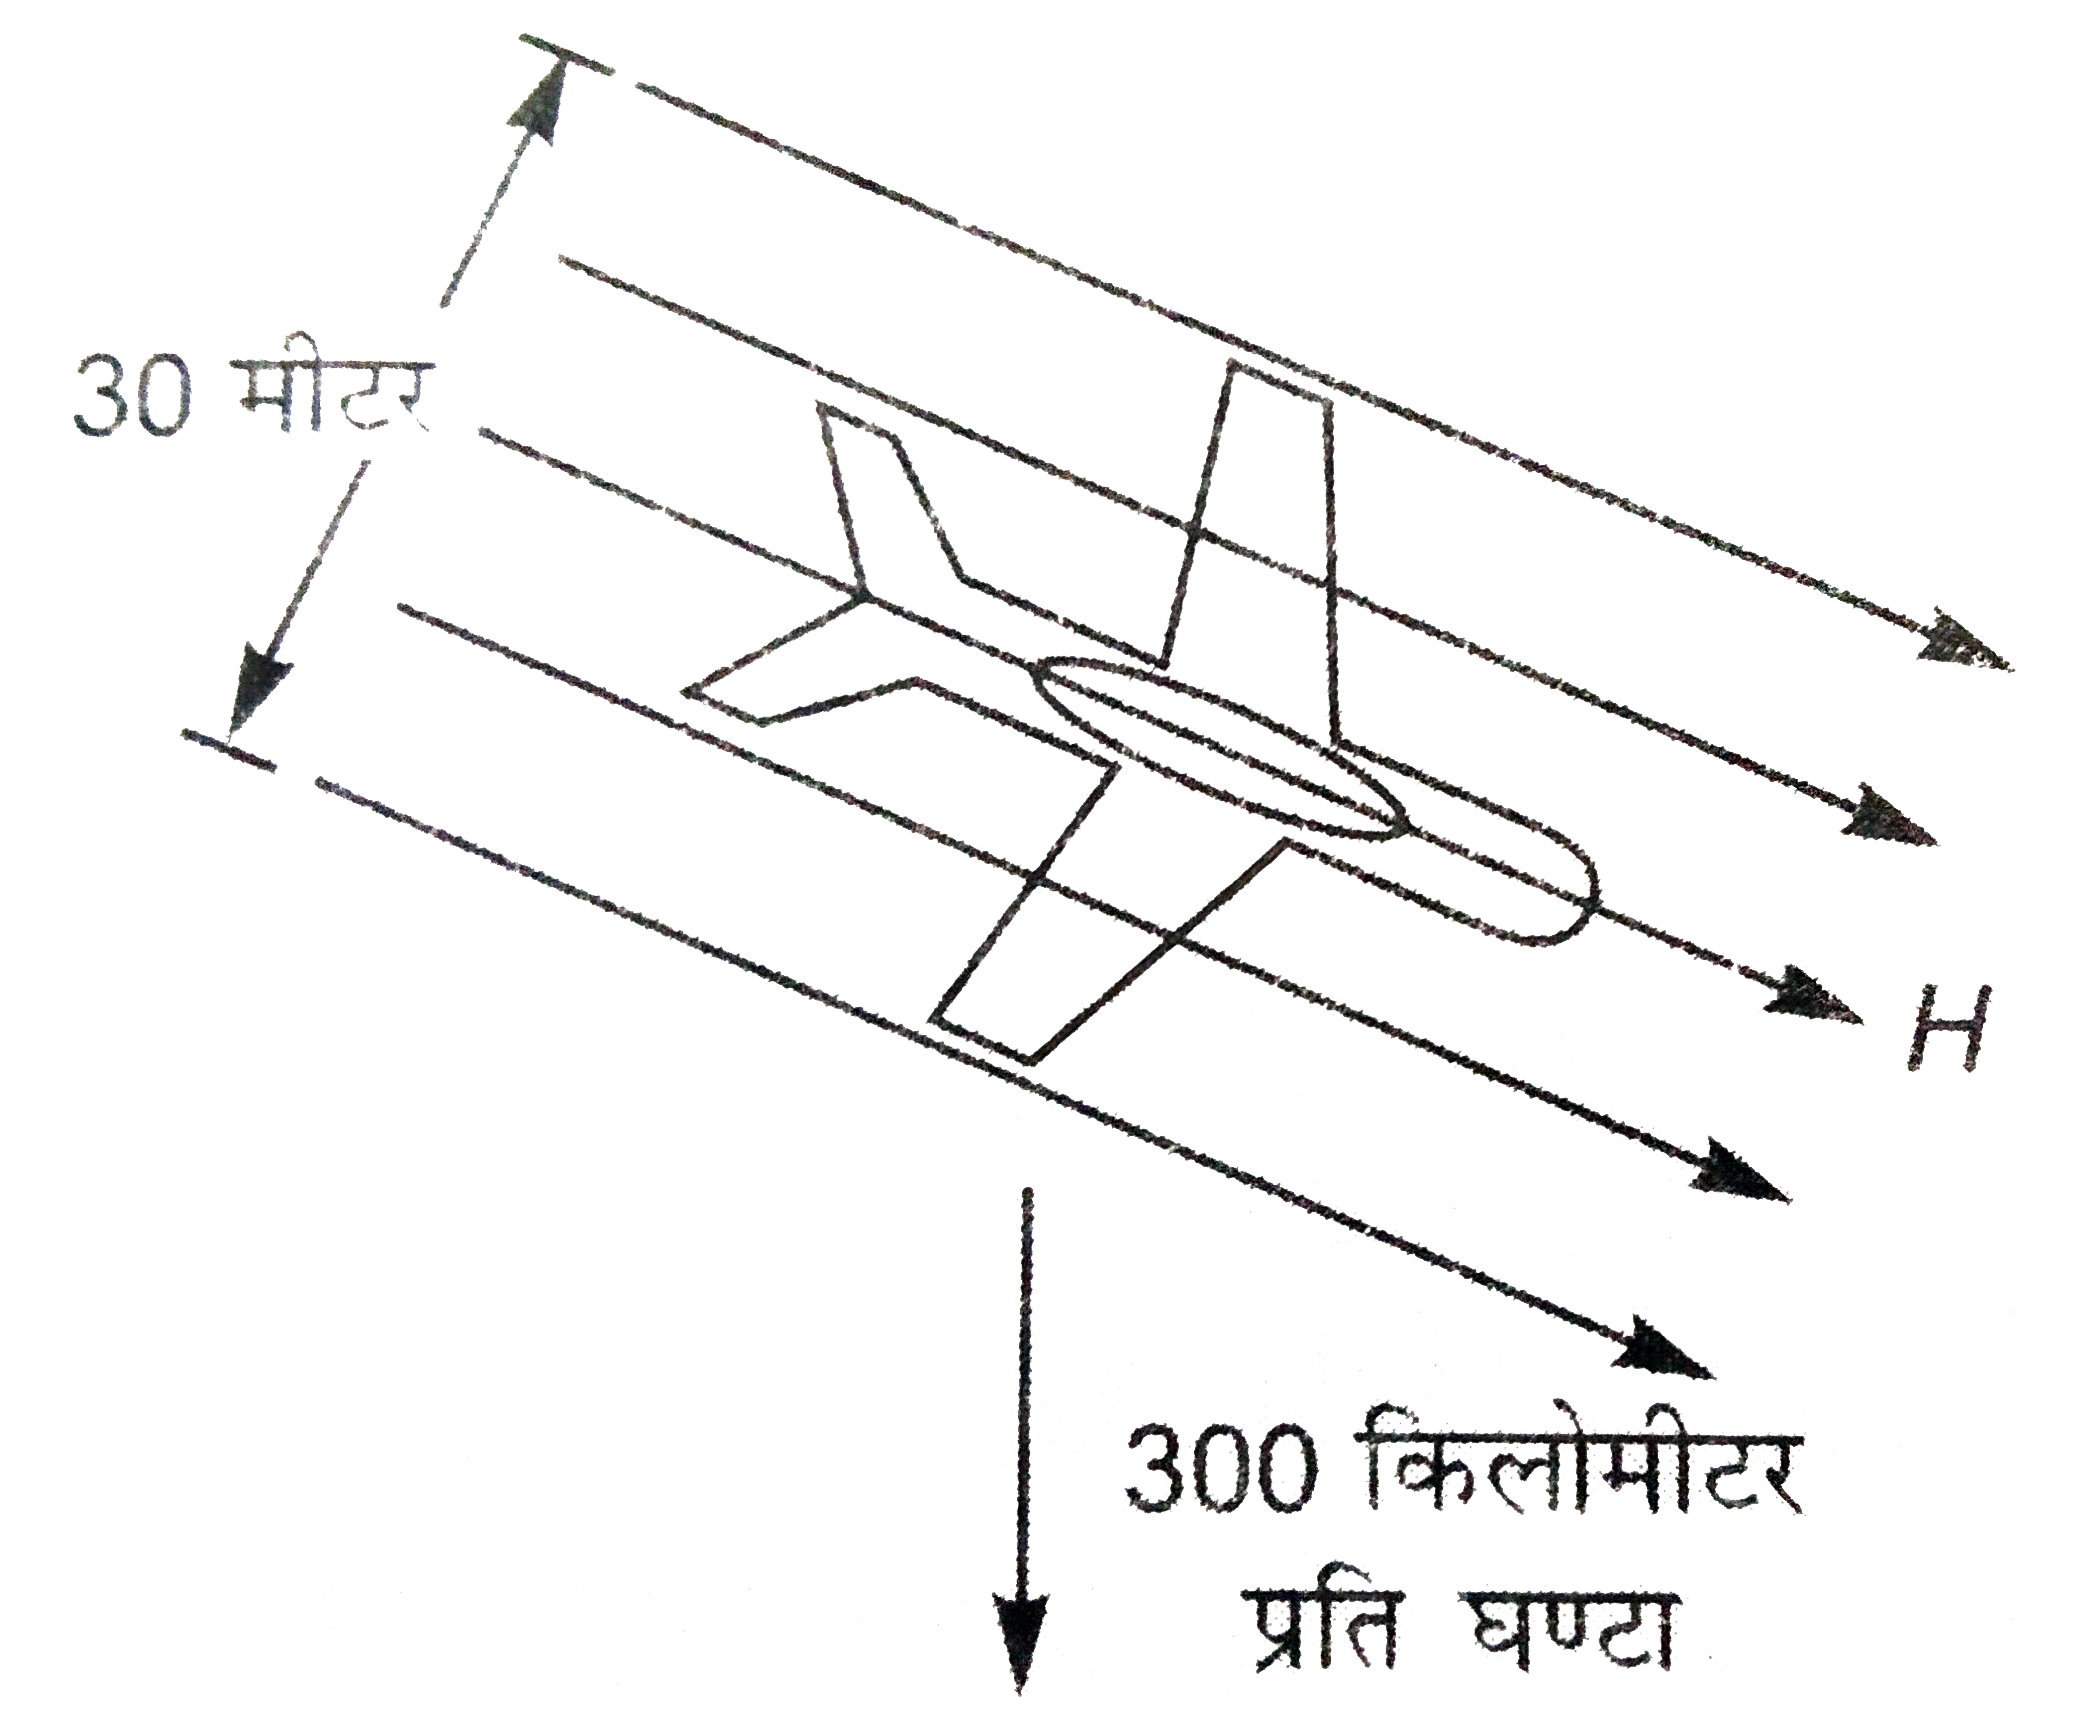 एक वायुयान, जिसके दोनों पंखो की नोको के बीच की दूरी 30 मीटर है 300 किलोमीटर प्रति घण्टे के वग से नीचे उत्तर रहा है यदि उतरते समय वायुयान के पंख पूर्व - पश्चिम में हो तो इसके पंखो की नोको के बीच प्रेरित विभवांतर ज्ञात कीजिये । यदि पंख उत्तर - दक्षिण में हो, तब (B(H)=0.4 गौस)